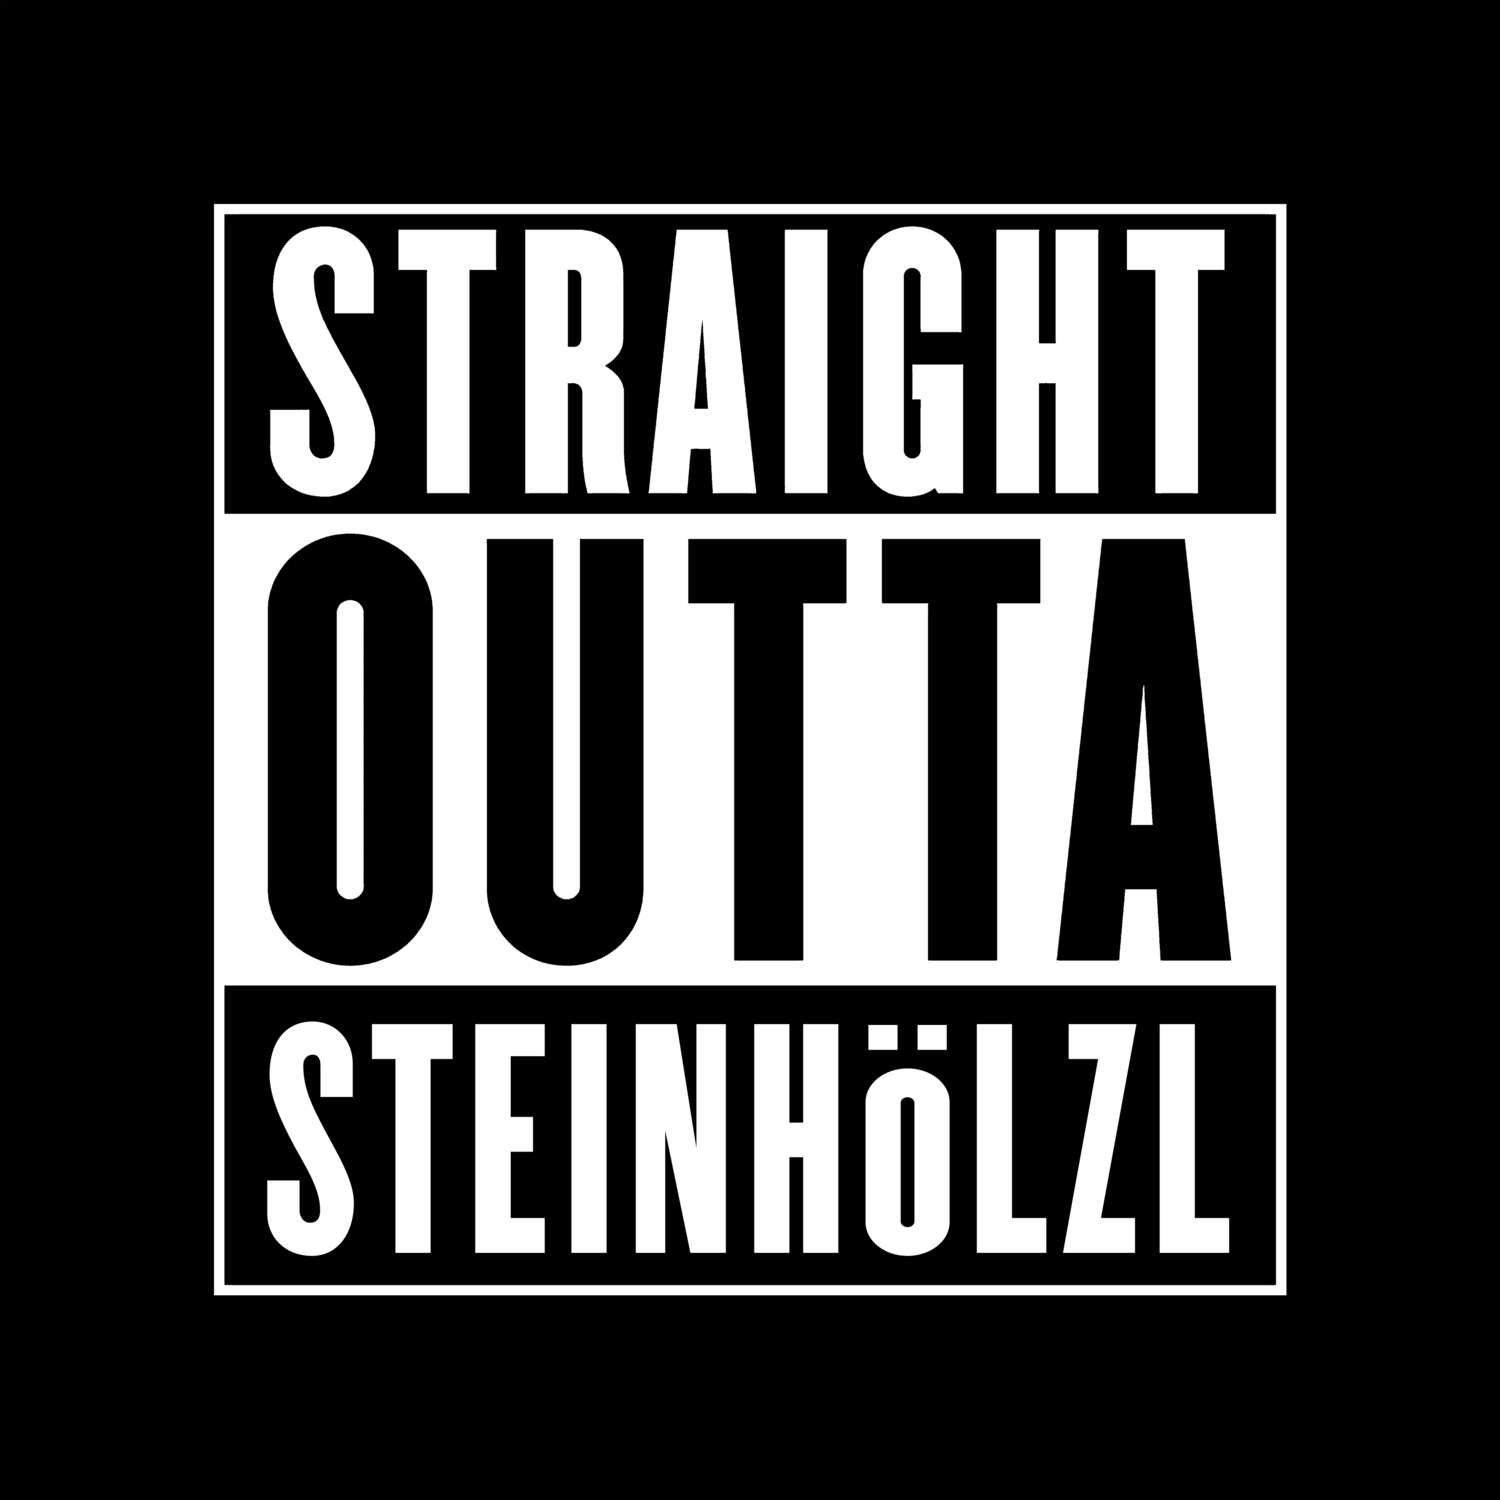 Steinhölzl T-Shirt »Straight Outta«